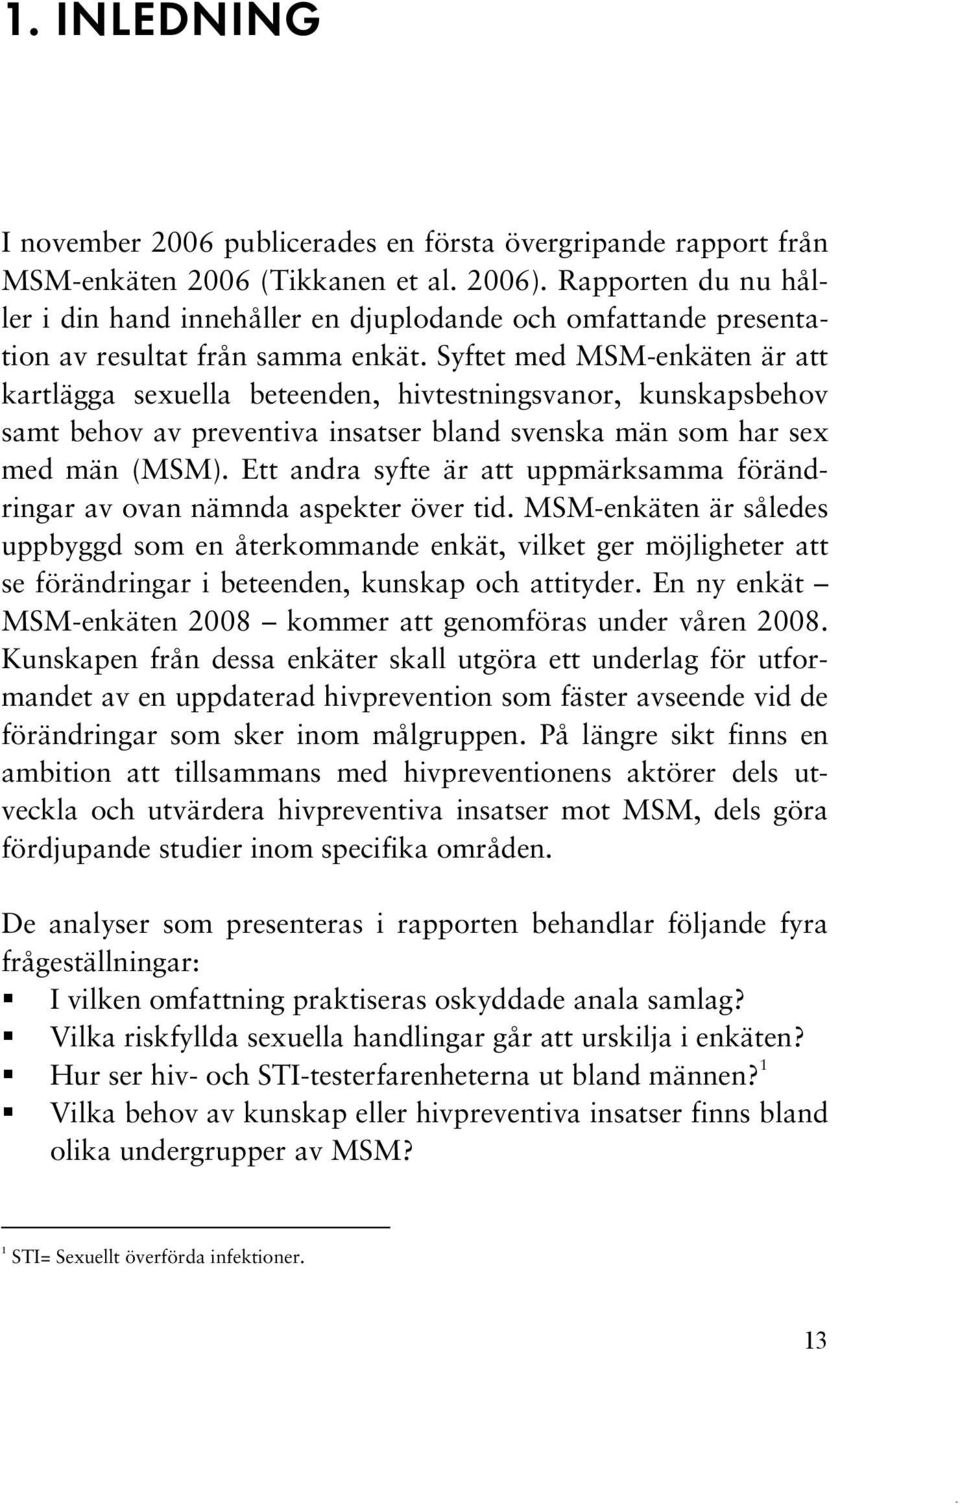 Syftet med MSM-enkäten är att kartlägga sexuella beteenden, hivtestningsvanor, kunskapsbehov samt behov av preventiva insatser bland svenska män som har sex med män (MSM).